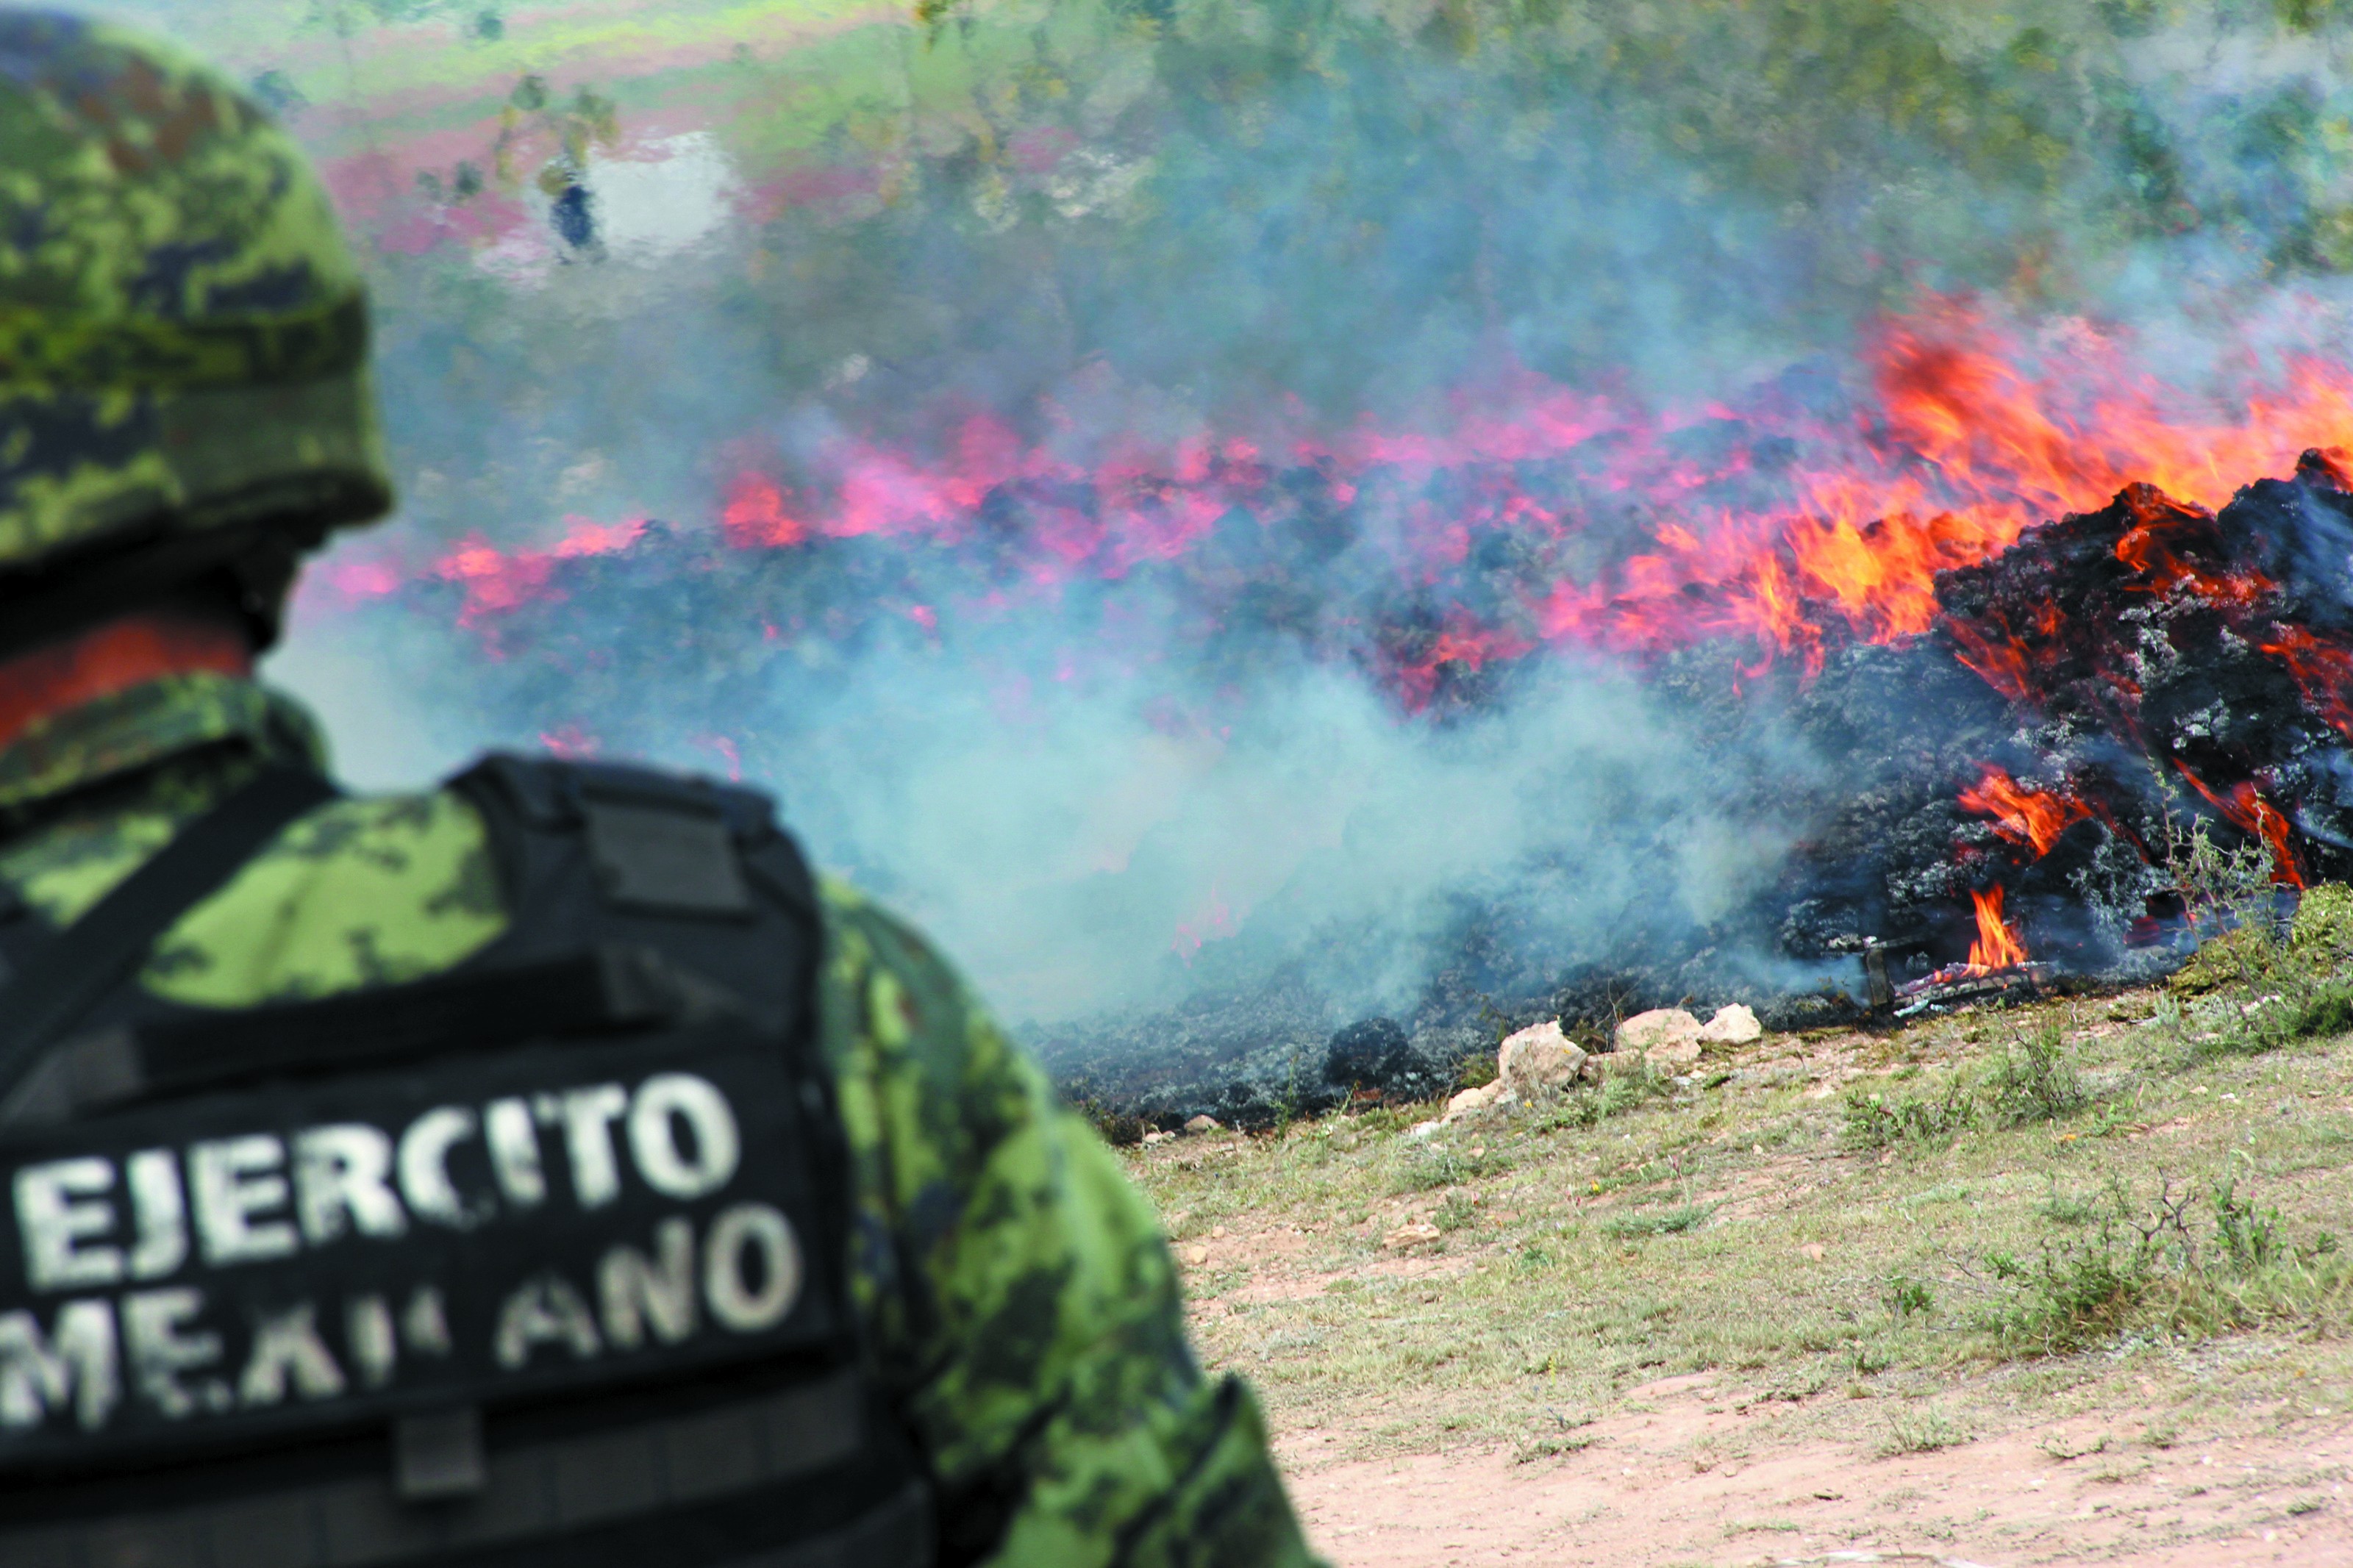 Incineración de droga por parte de autoridades. Foto: ANDRÉS SÁNCHEZ / Archivo